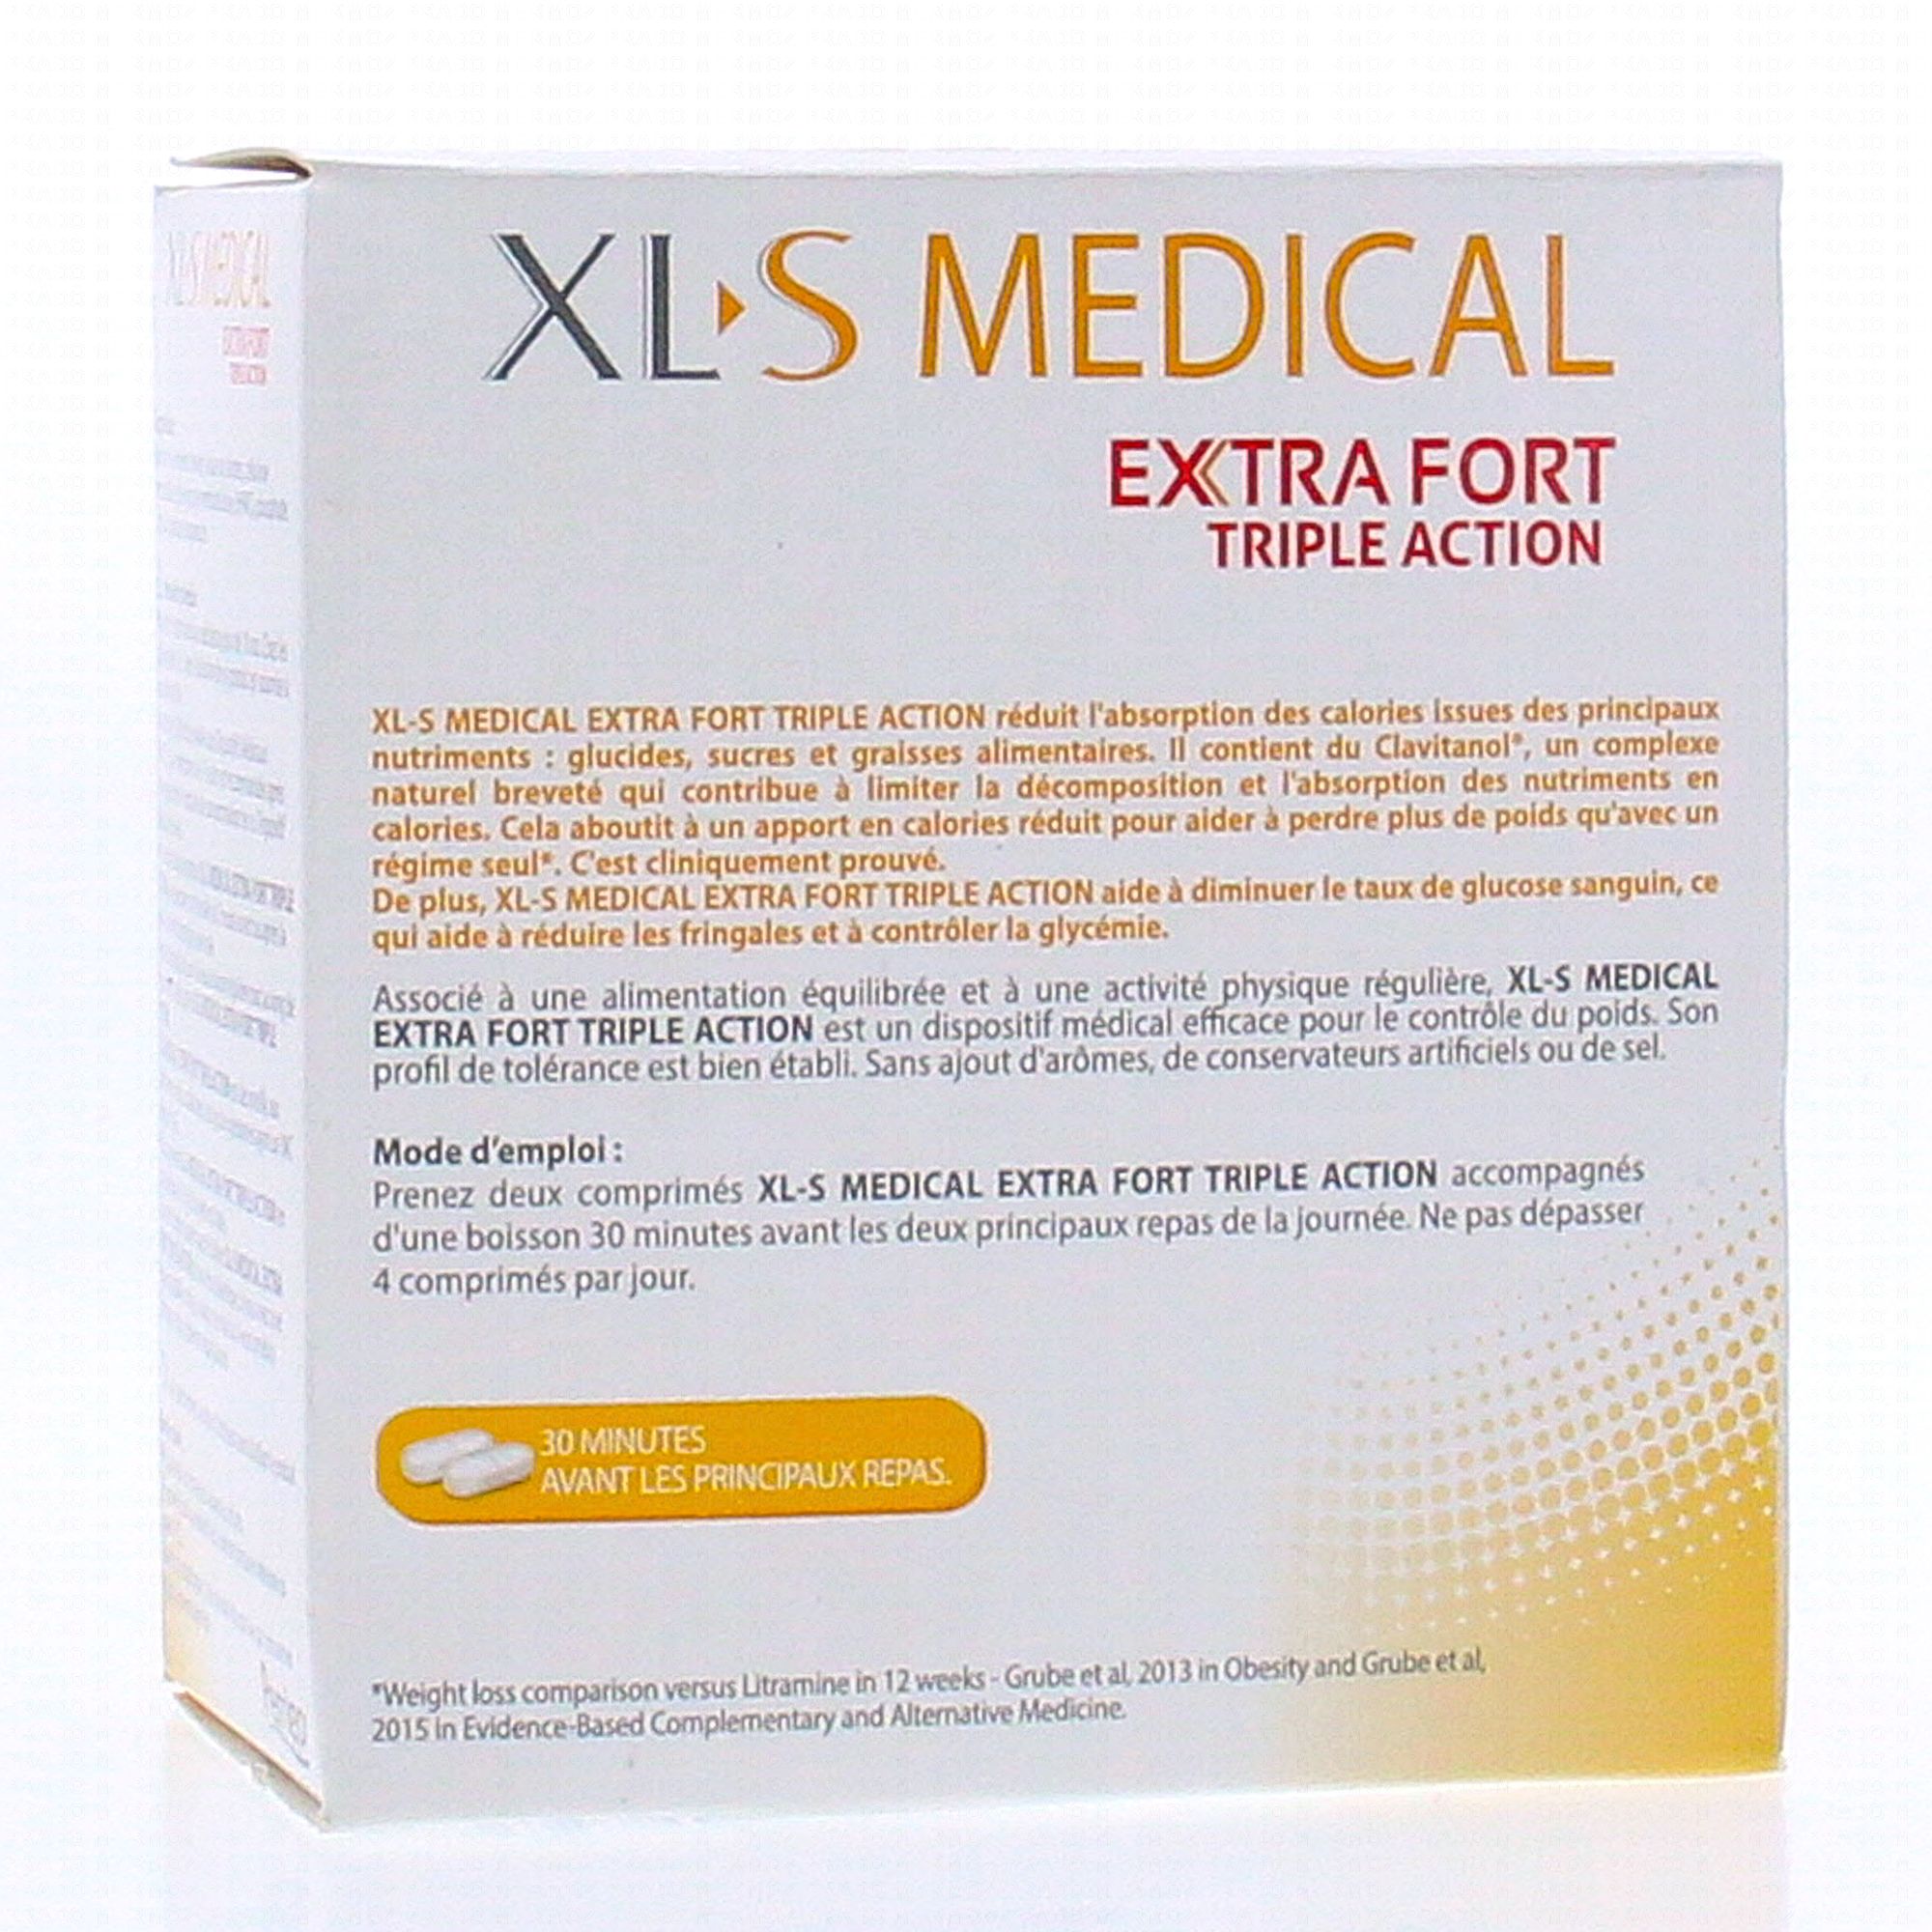 XLS Medical Extra Fort 120 Comprimés